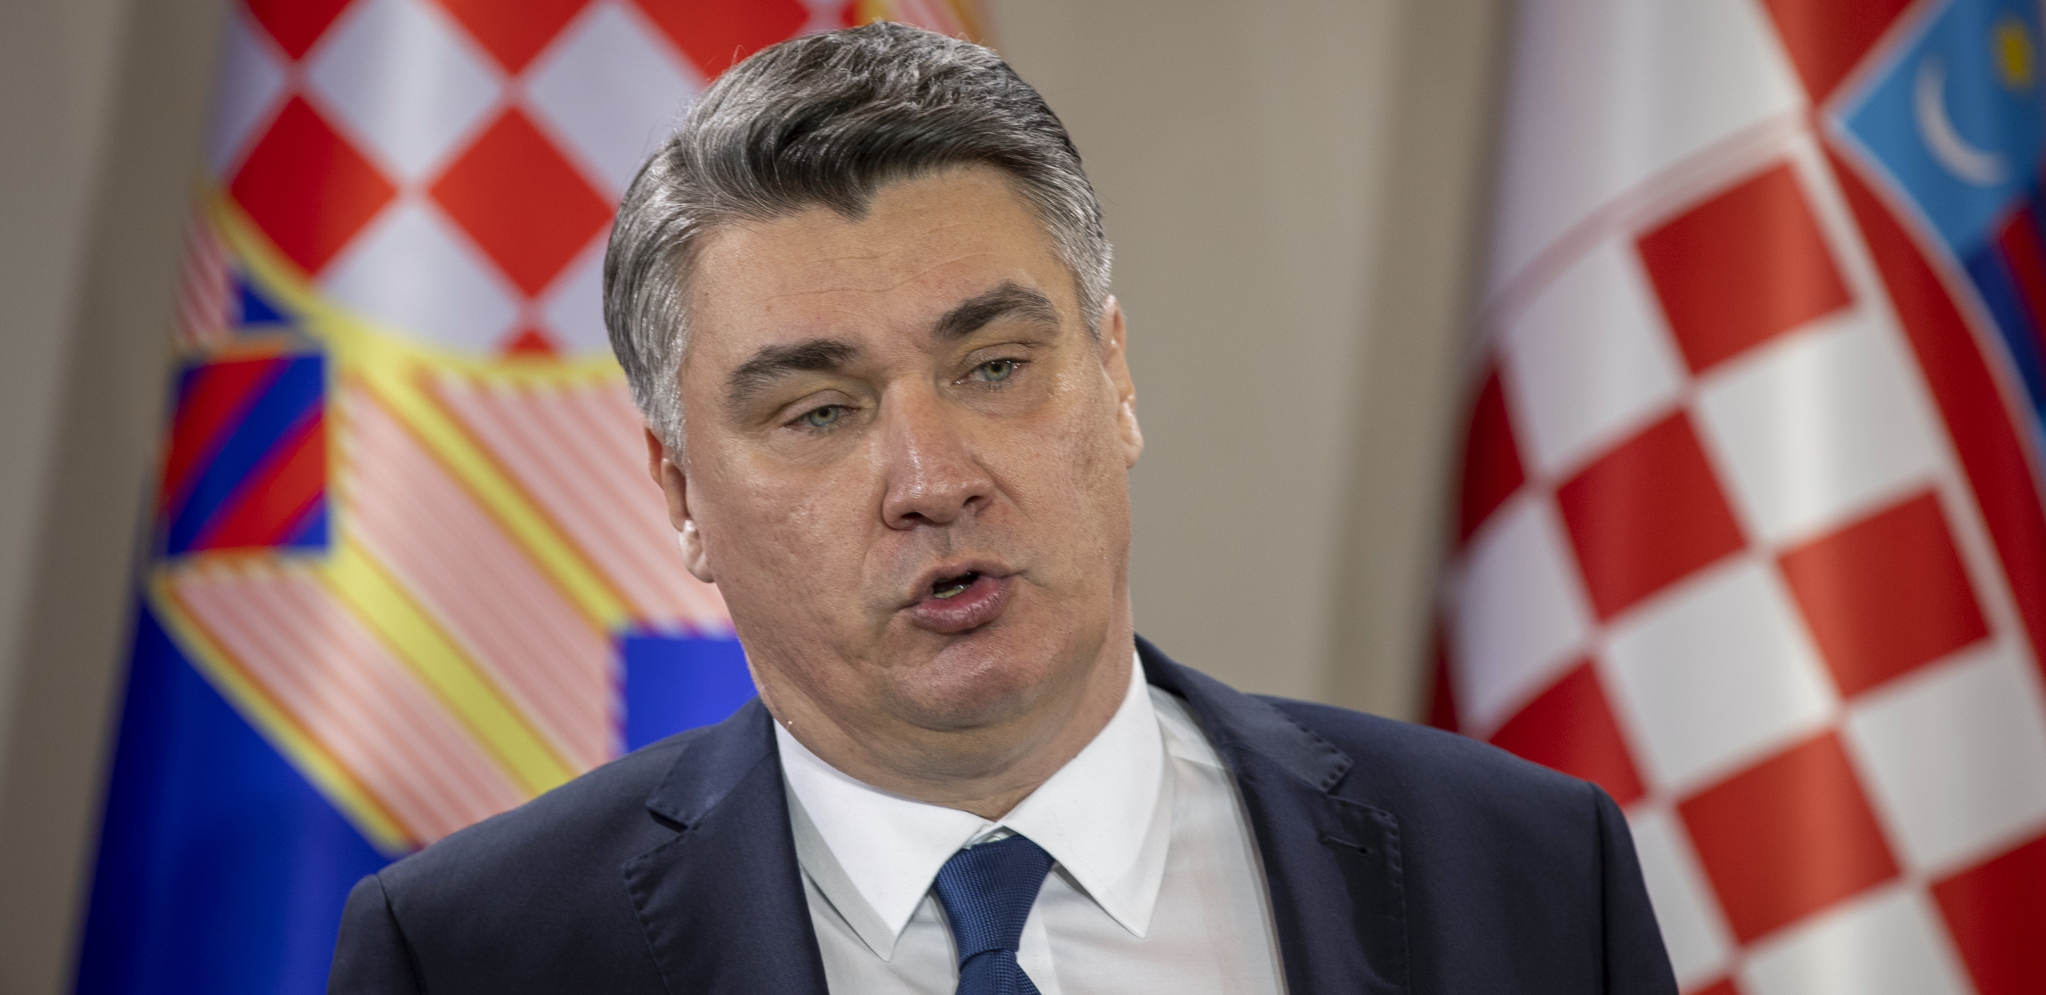 MILANOVIĆ POZIVA EU DA UVEDE POTPUNI EMBARGO Predsednik Hrvatske istakao da sankcije ne funkcionišu i da Rusija to ne oseća